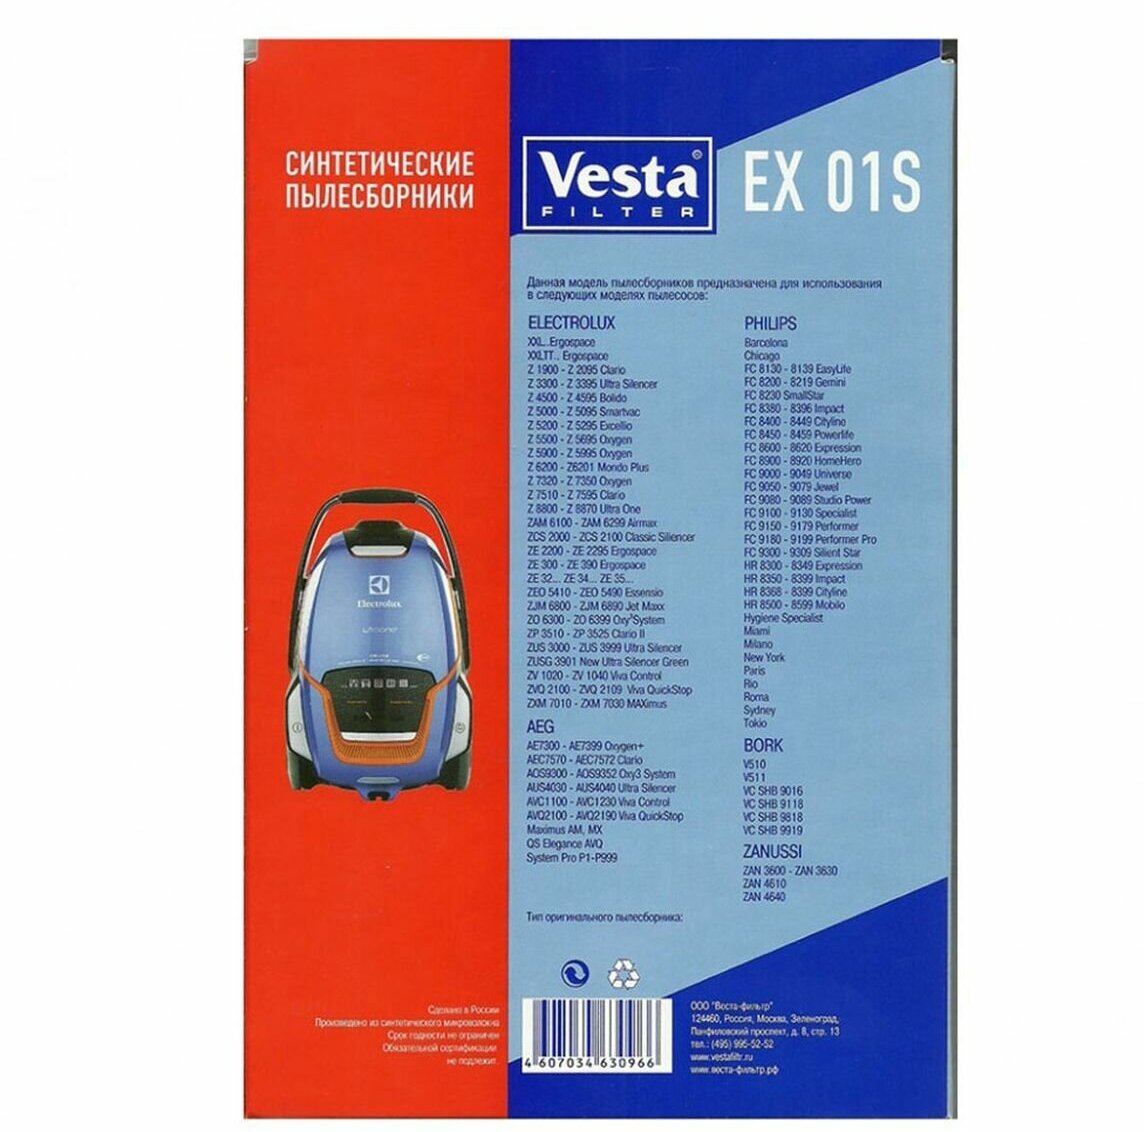 Vesta filter Синтетические пылесборники EX 01S, белый, 4 шт. - фото №5